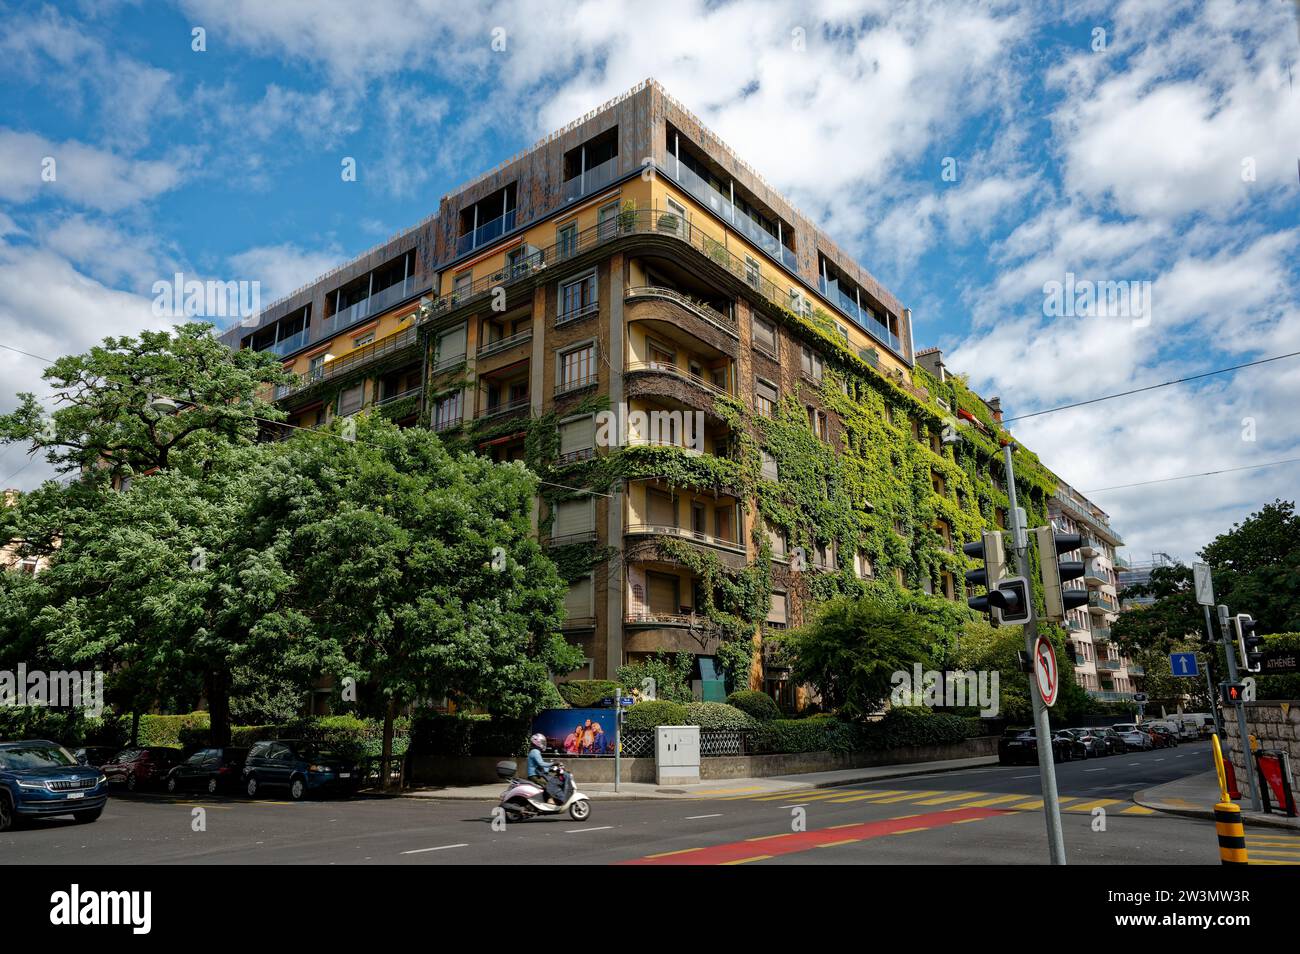 Ein imposantes Wohngebäude mit üppigem, hellgrünem Laub an der Außenseite, eingebettet in eine charmante Ecke von Genf, während ein Roller vorbeifährt. Stockfoto